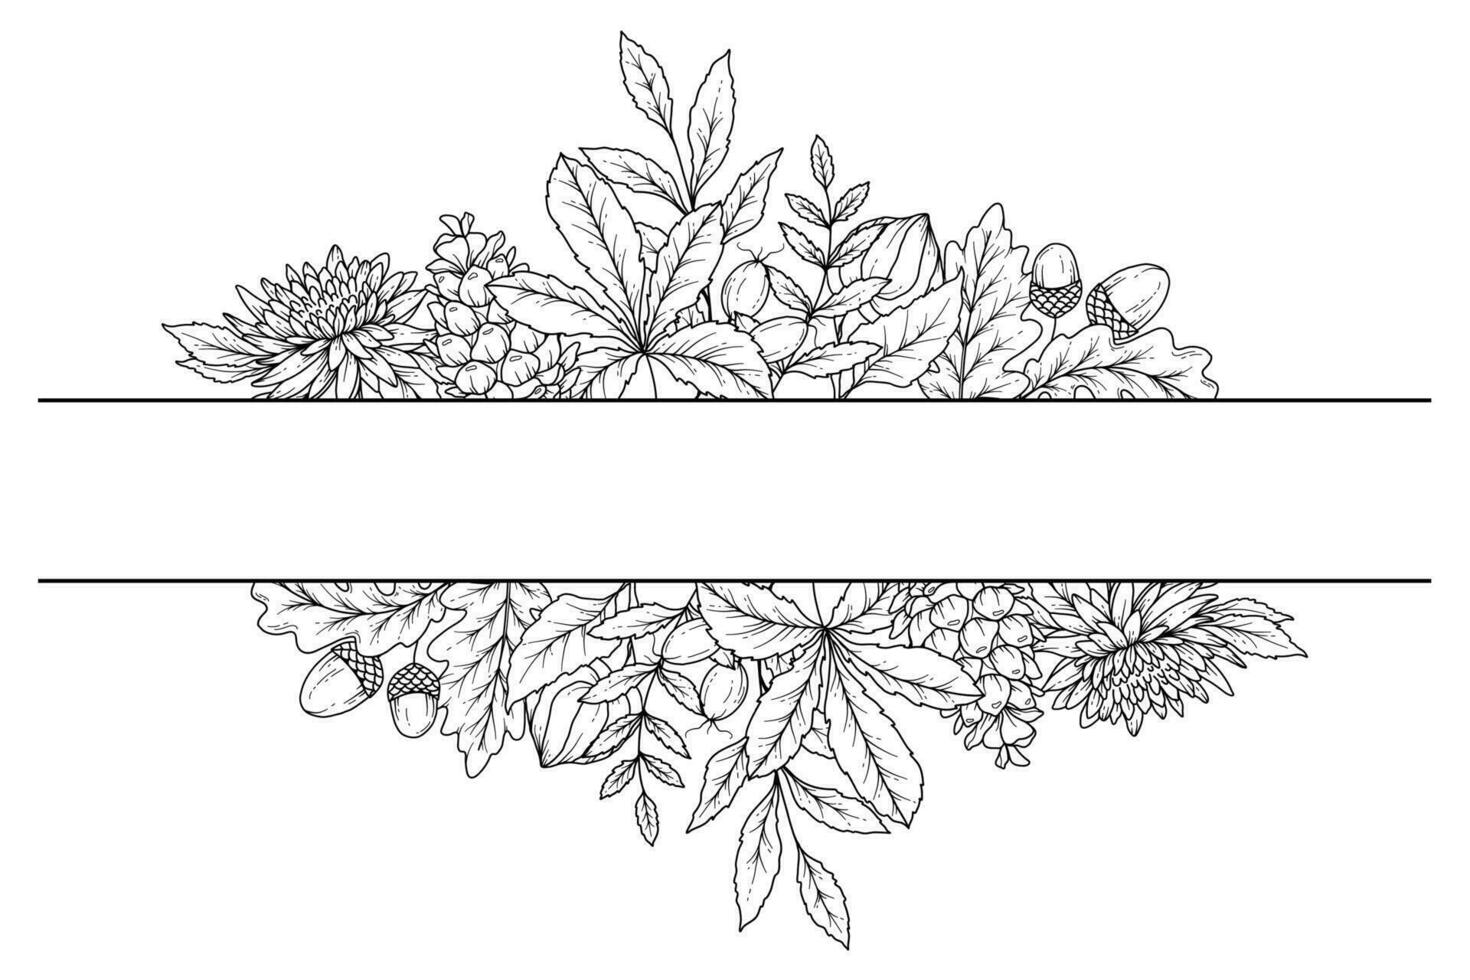 otoño floral marco describir. otoño follaje línea Arte ilustración, contorno hojas arreglo mano dibujado ilustración. otoño colorante página con hojas vector